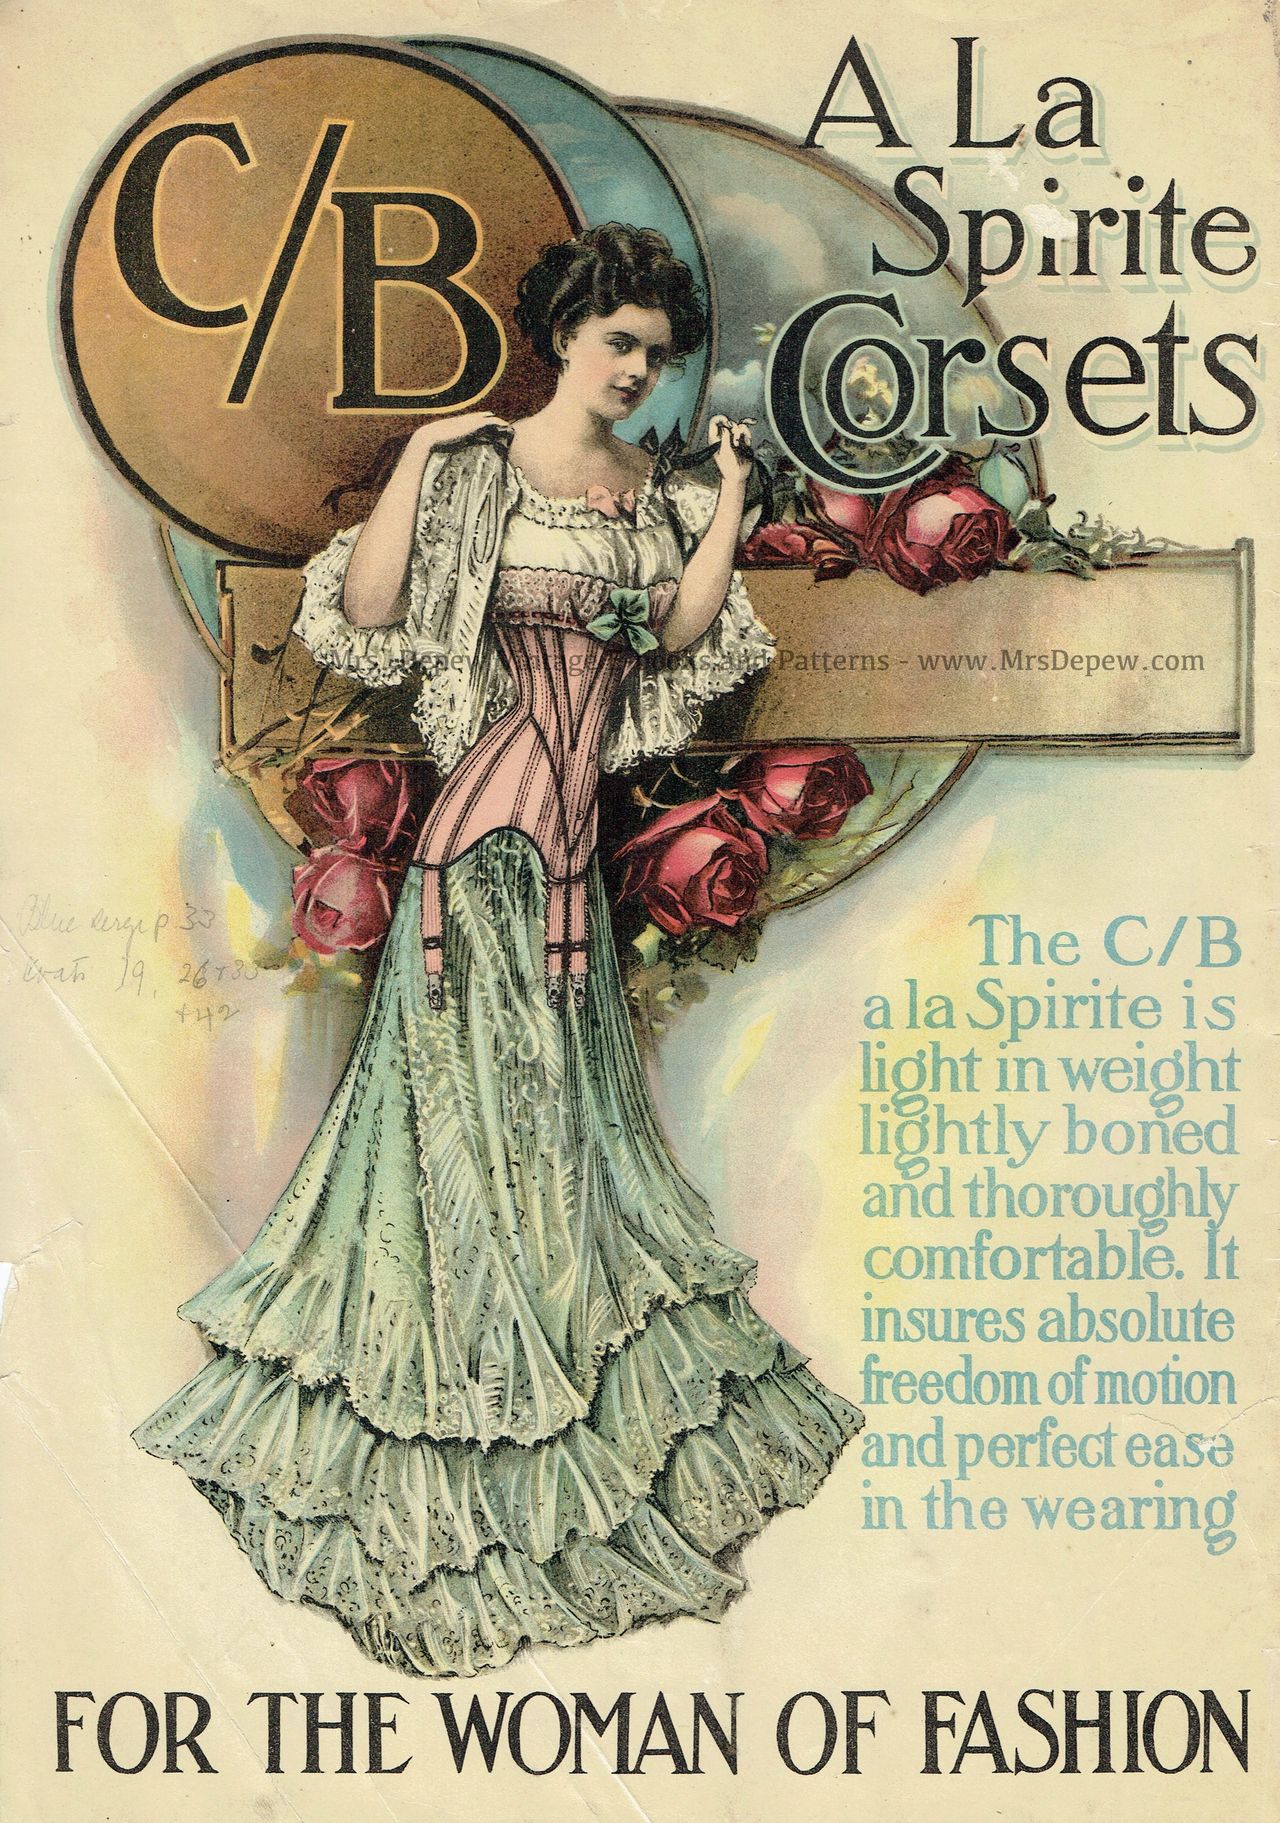 About anti-corset propaganda.